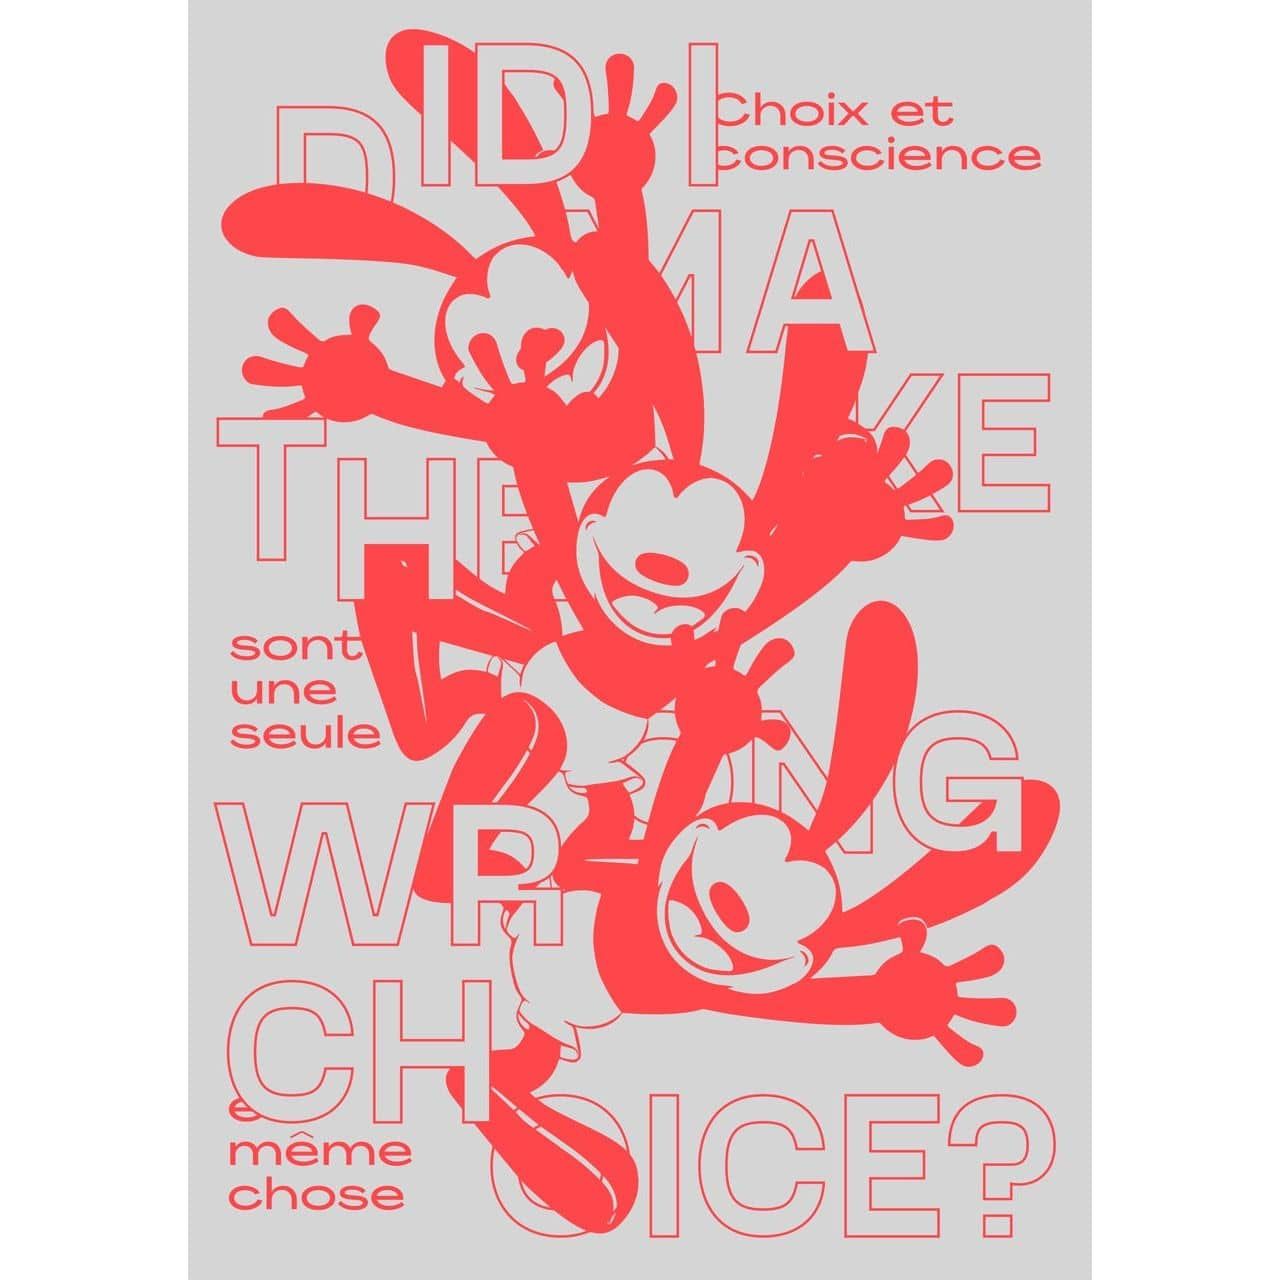 Choice - Jérôme Bizien